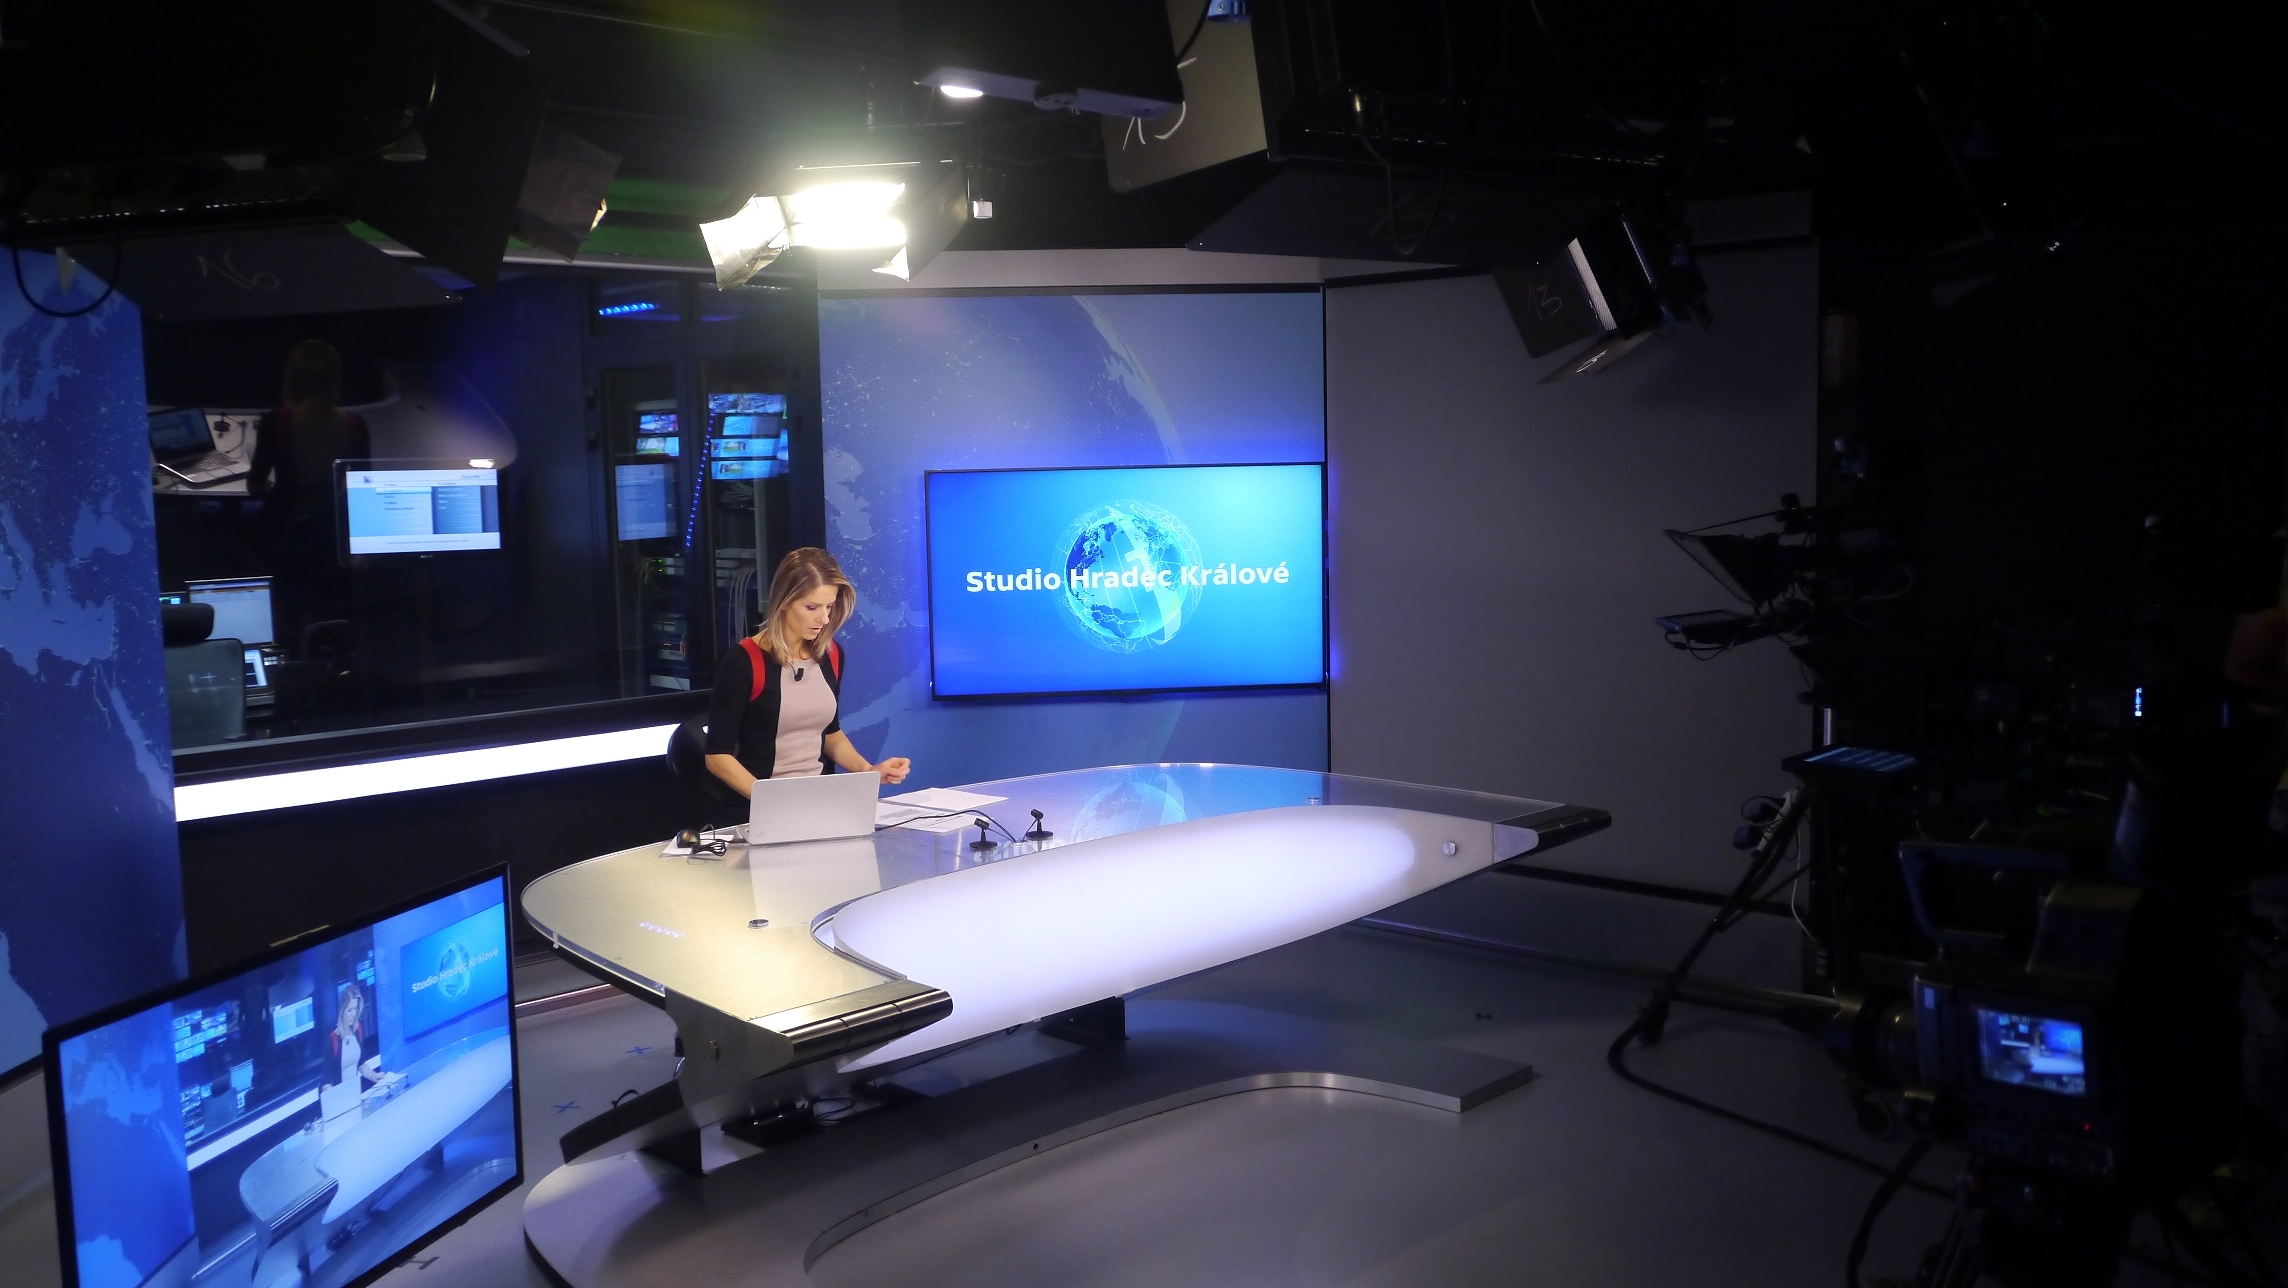 Česká televize posiluje regionální zpravodajství, CNN Prima News odhalila  první staniční tvář | Digitální rádio